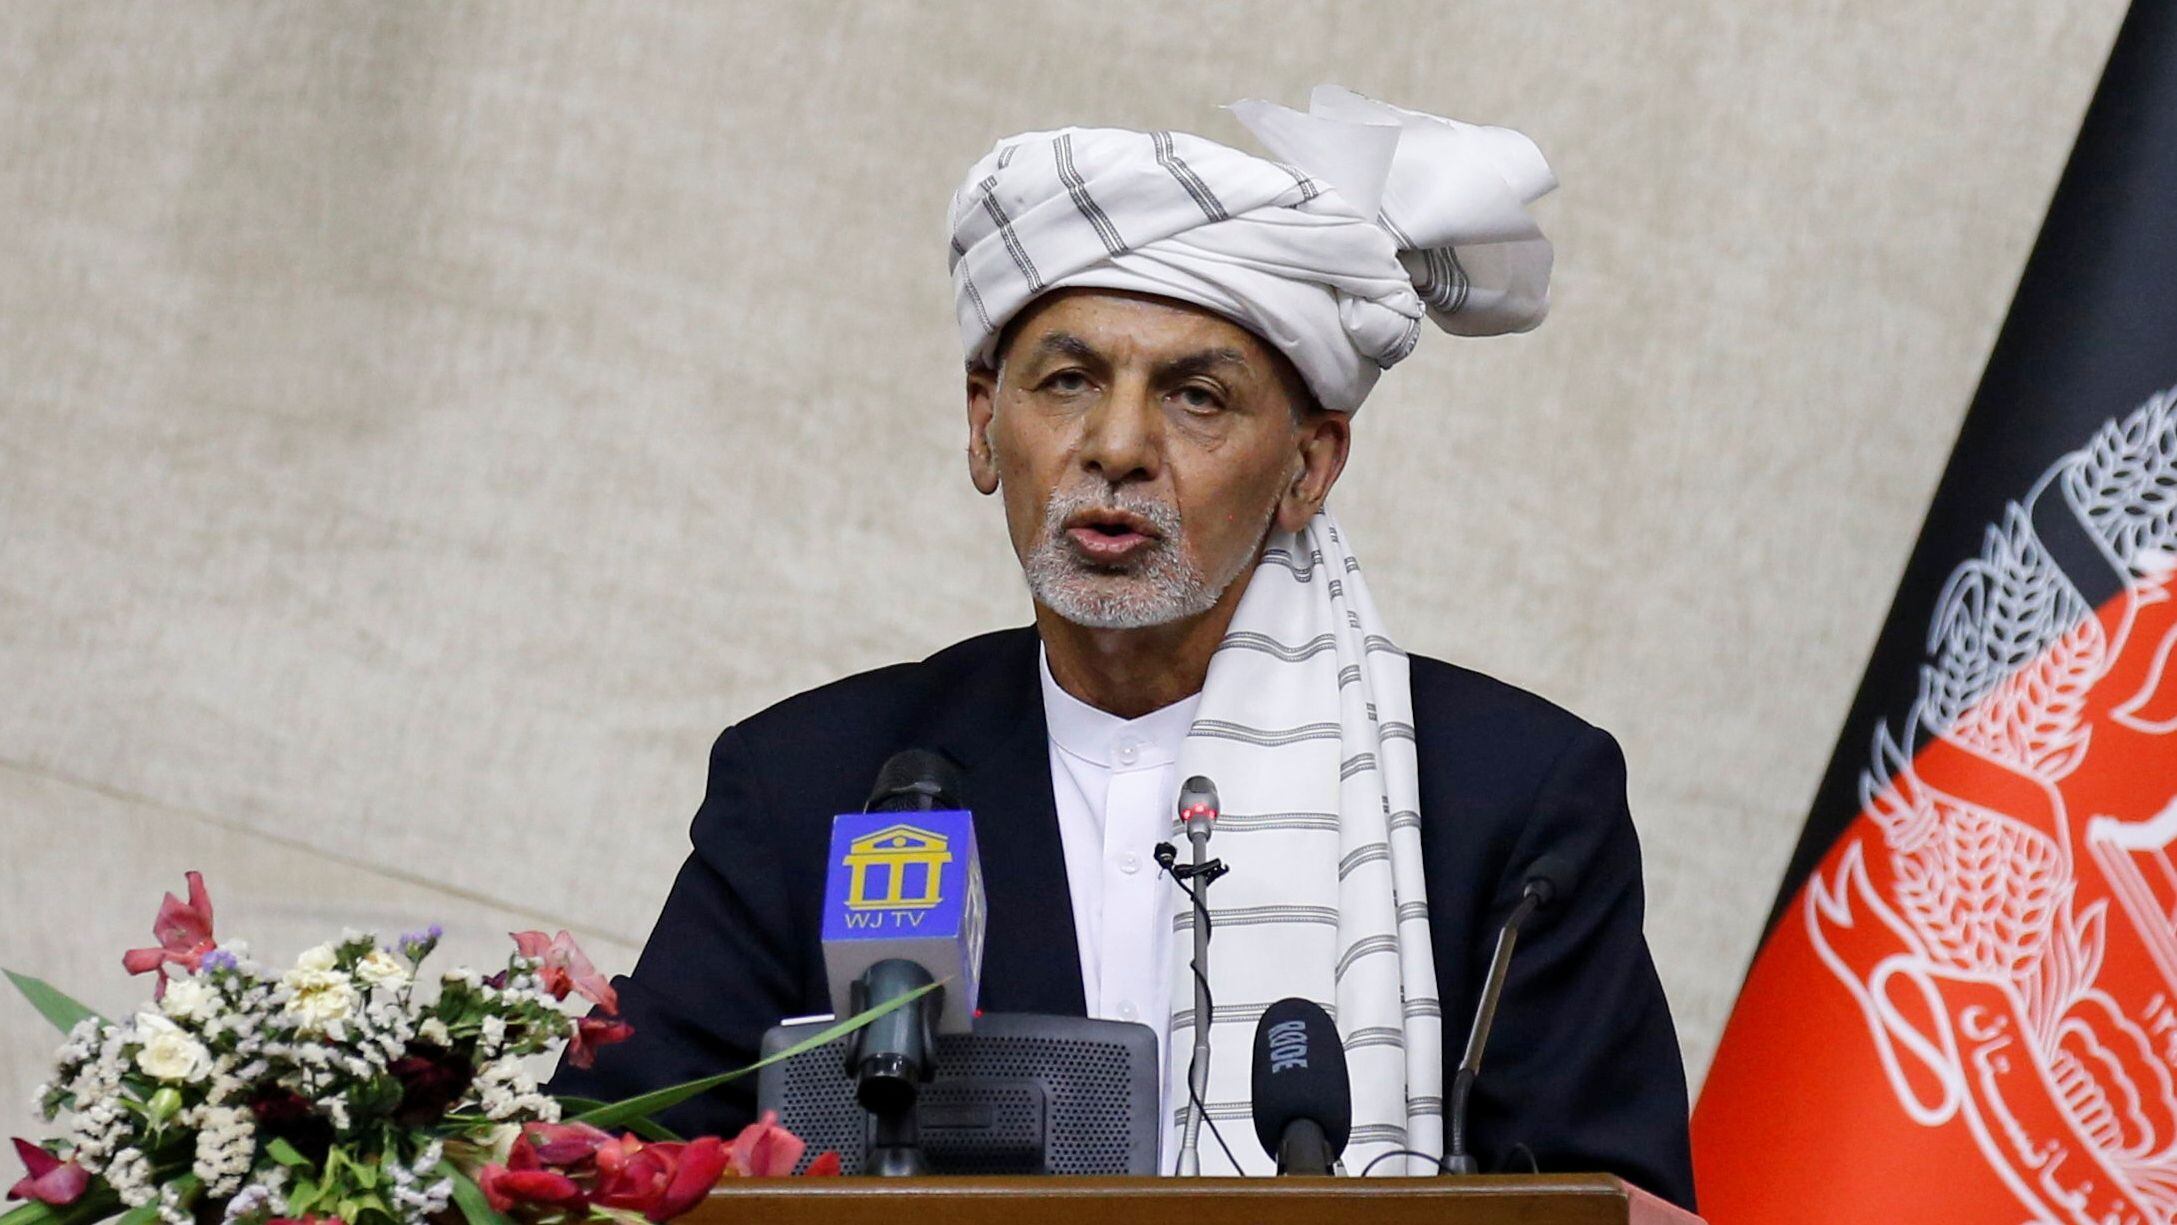 O presidente do Afeganistão, Ashraf Ghani, durante um pronunciamento em Cabul. Em vídeo, Ghani afirma que o reagrupamento das forças de segurança e defesa é prioritário para seu Governo. 